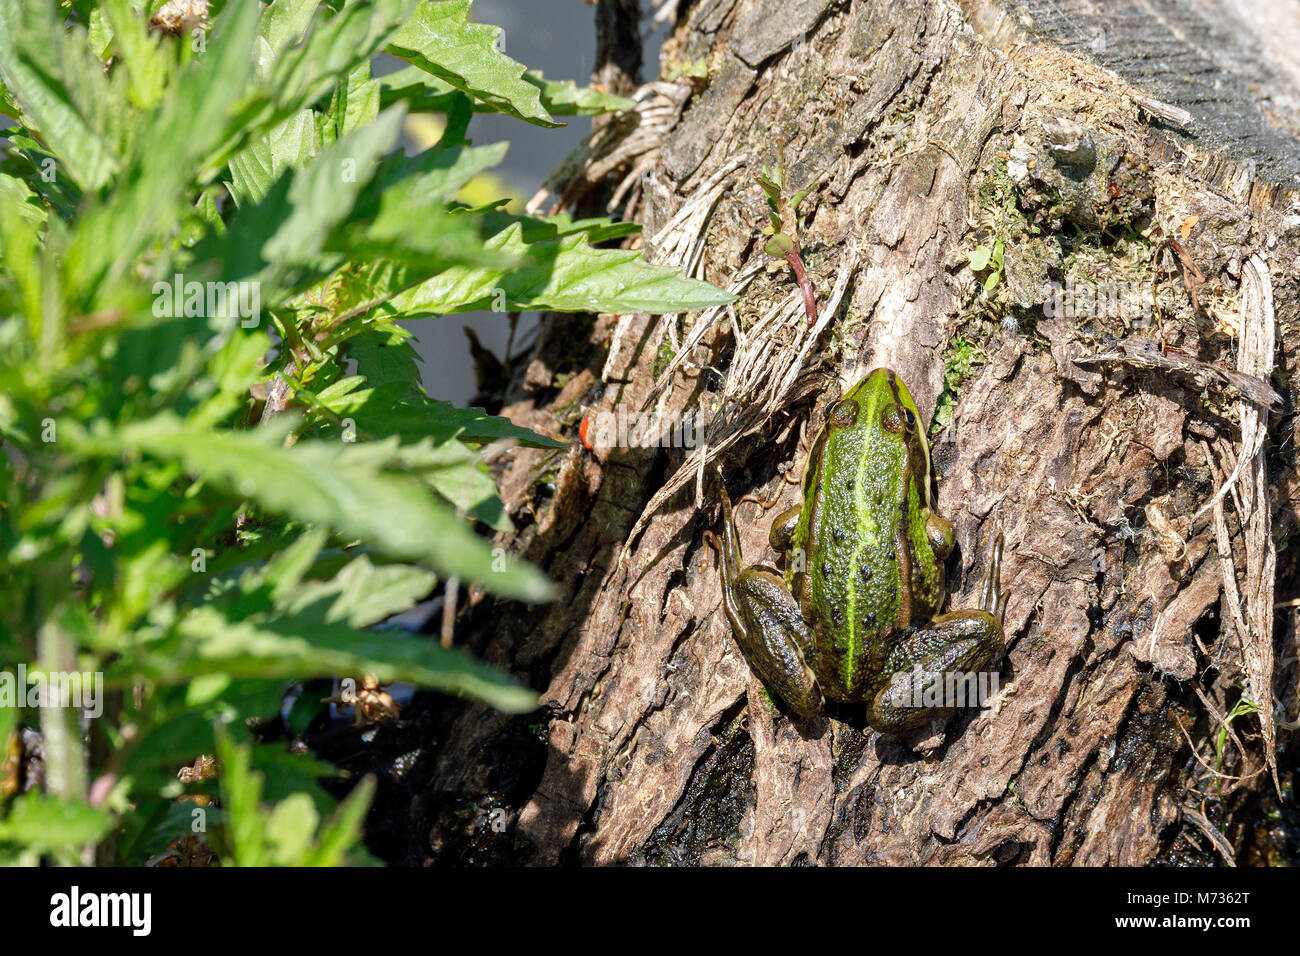 Bella palude frog (Pelophylax ridibundus),più grande rana nativo dell Europa, guardando fuori dell'acqua su un laghetto. Ceco, vita selvatica Foto Stock